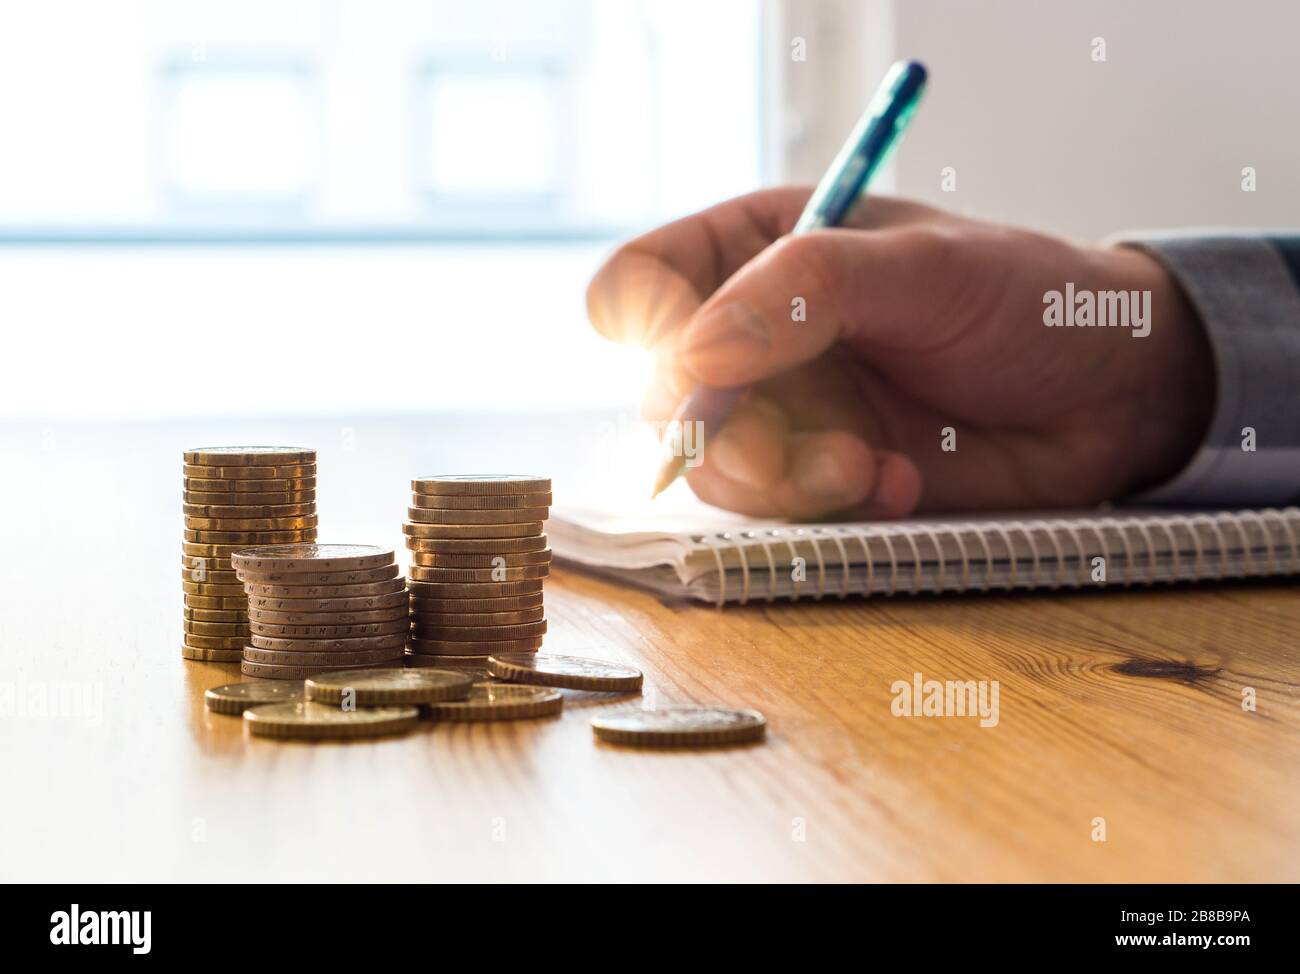 Uomo che conta spese, budget e risparmi e scrivere note su carta con penna. Budget e calcolo del costo della vita familiare. Foto Stock